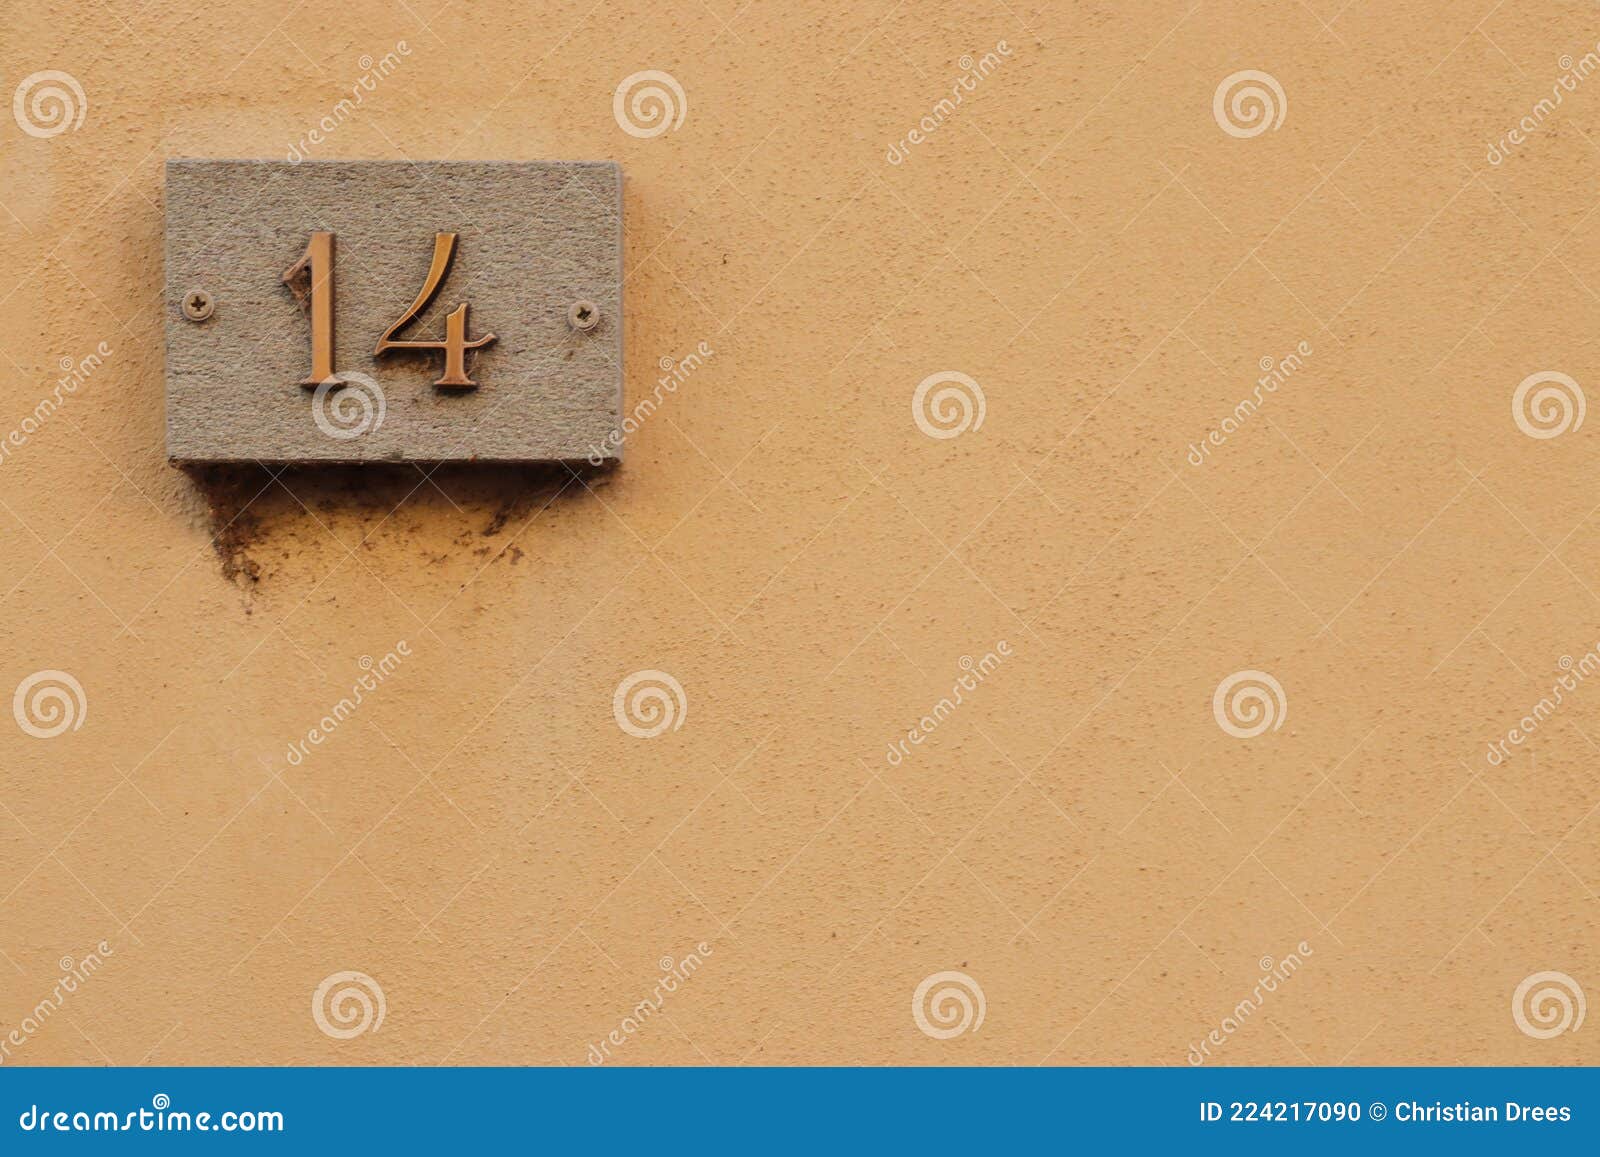 street number sign, number fourteen on the top left corner